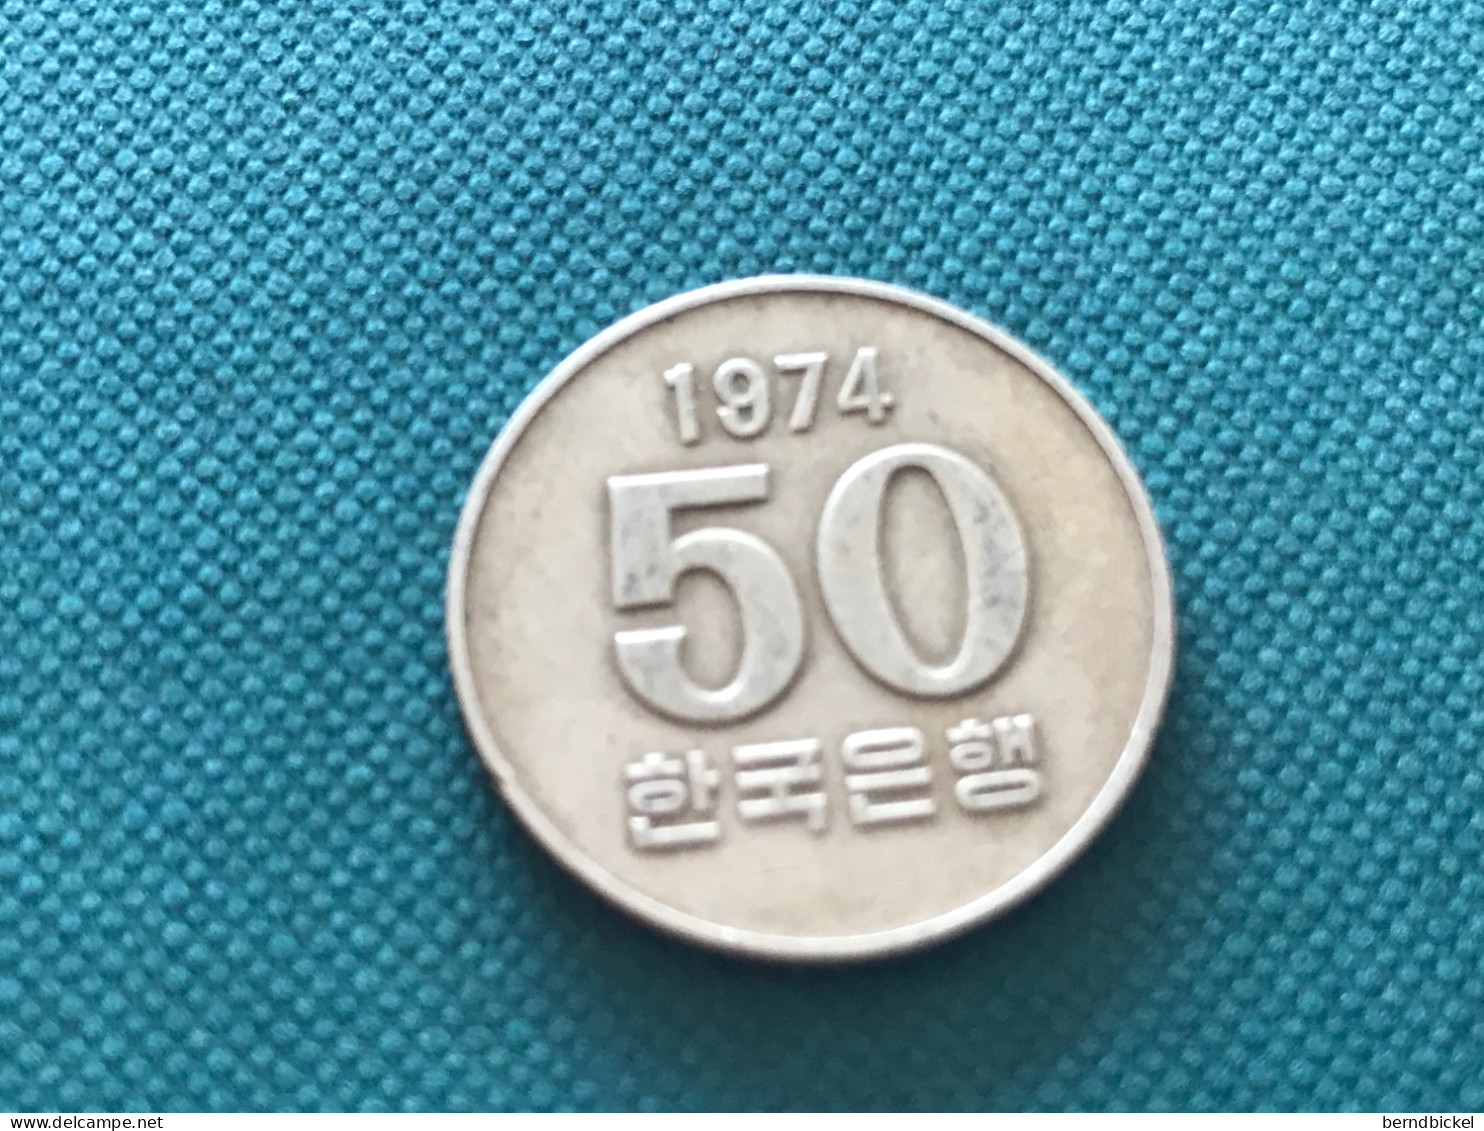 Münzen Münze Umlaufmünze Süd-Korea 50 Won 1974 - Korea (Süd-)